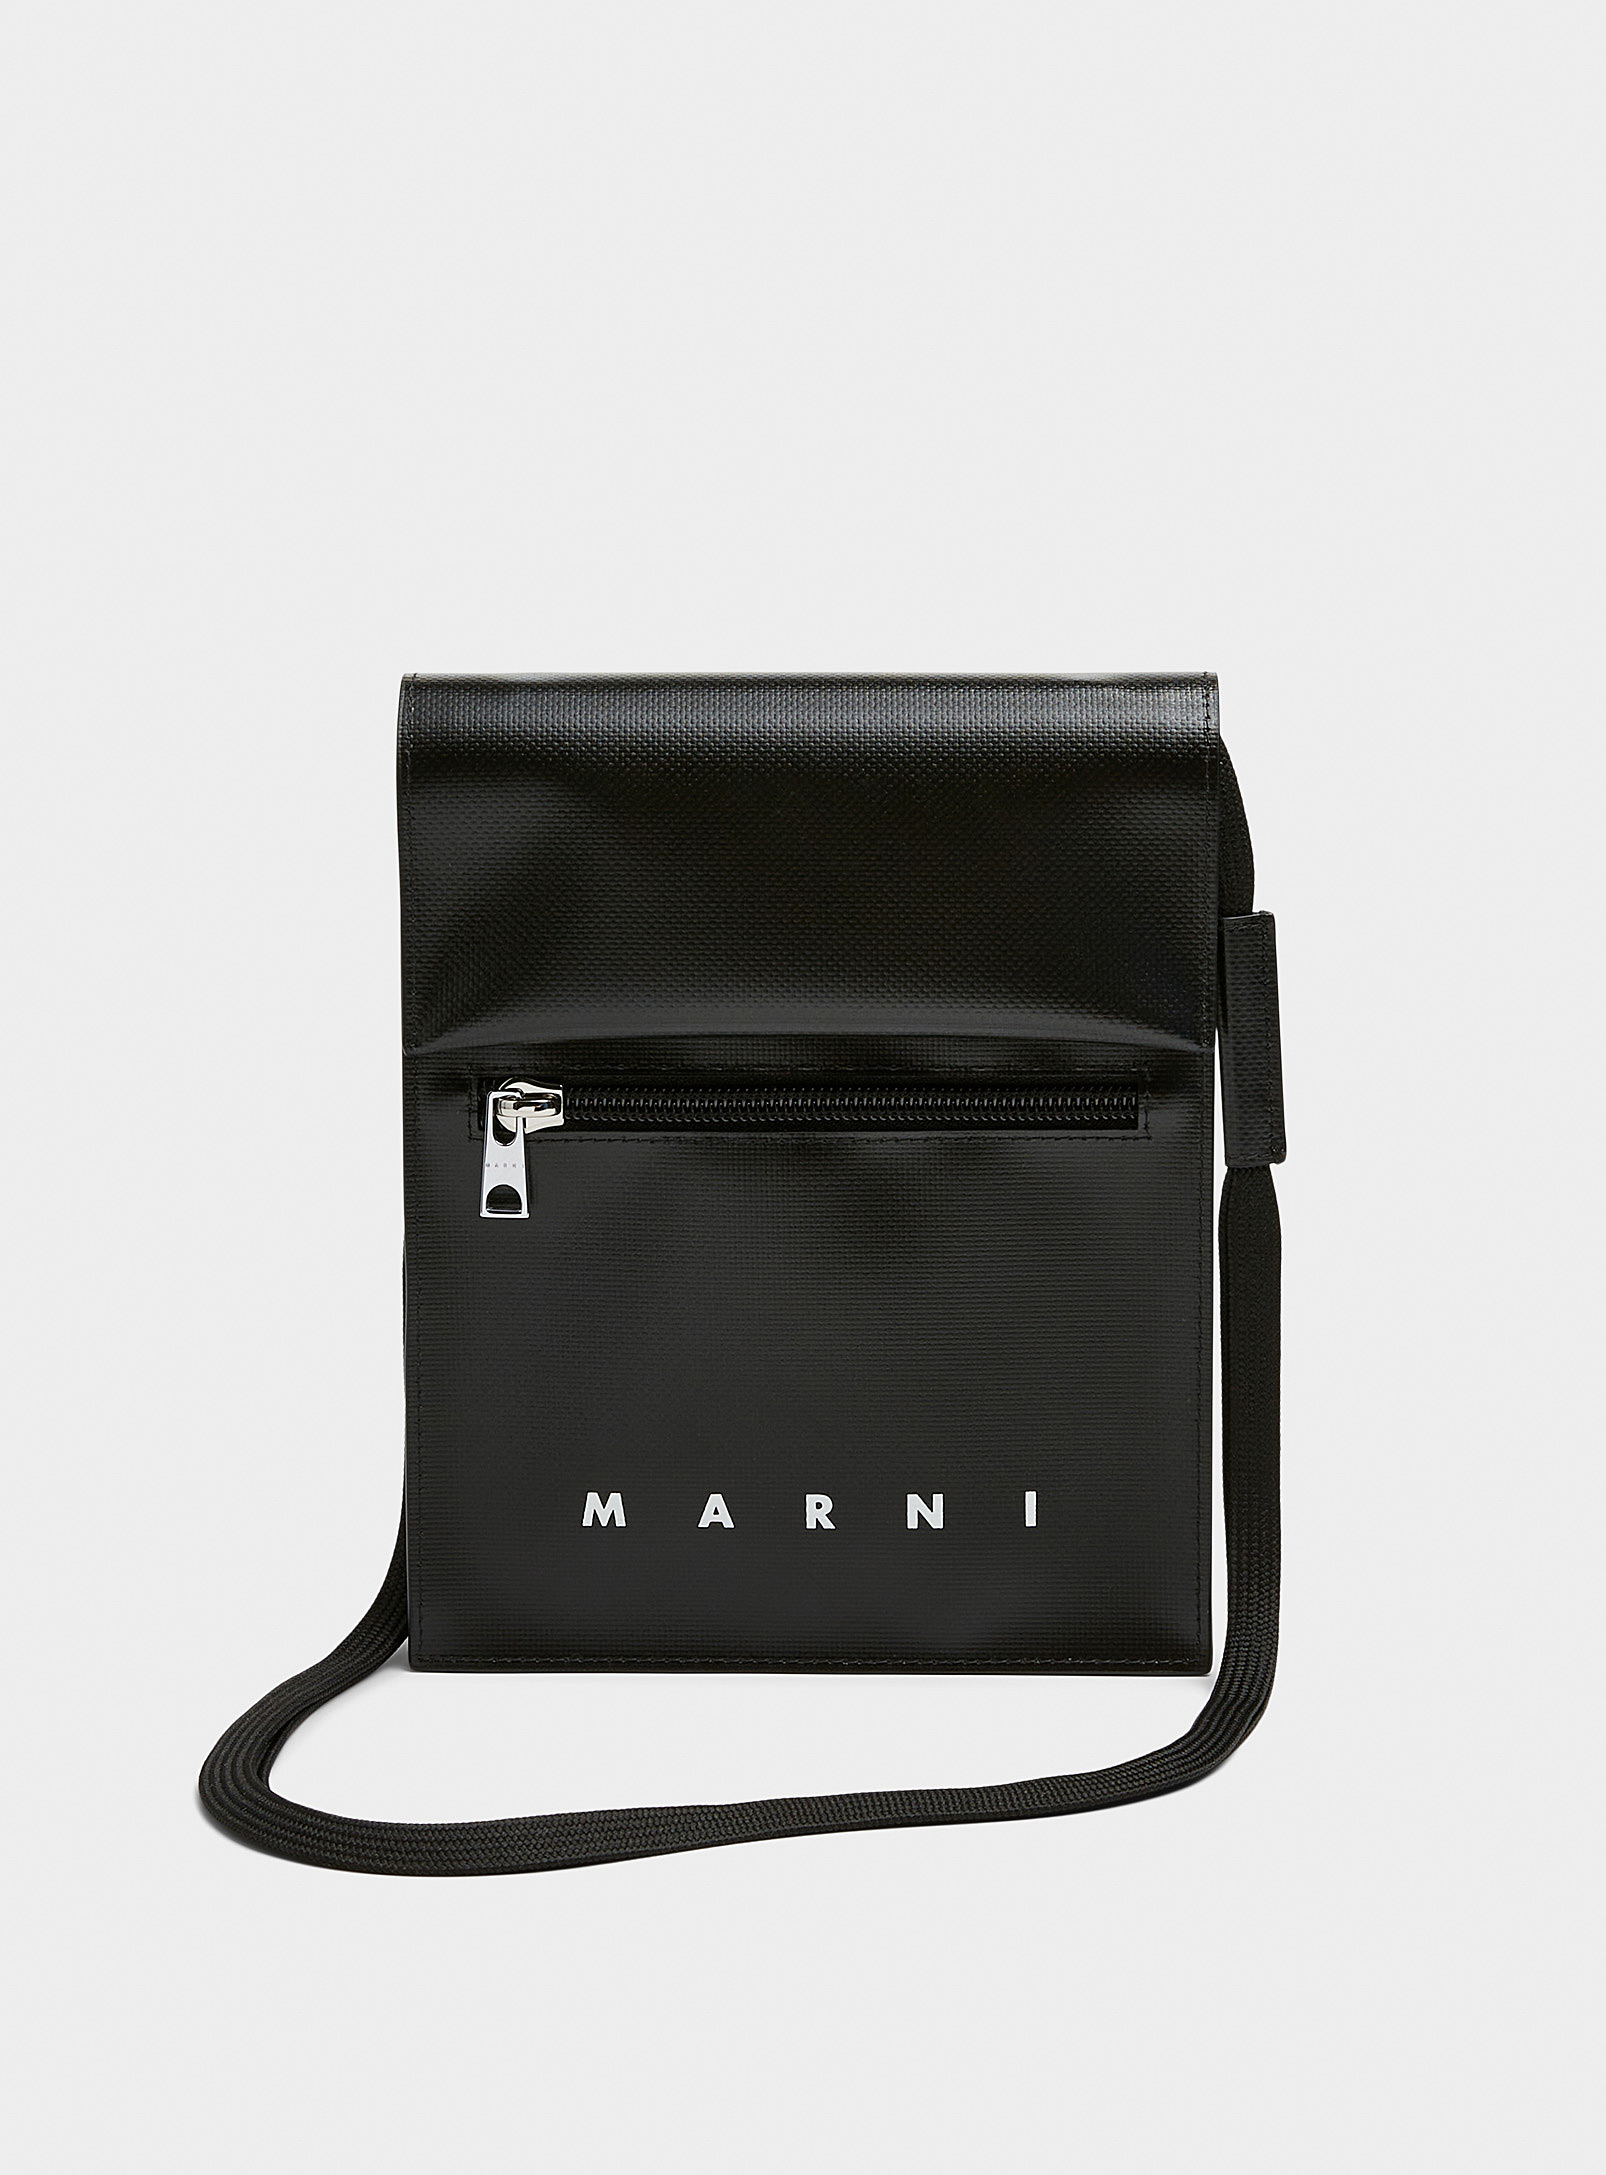 Marni Tribeca Cross-body Bag In Black